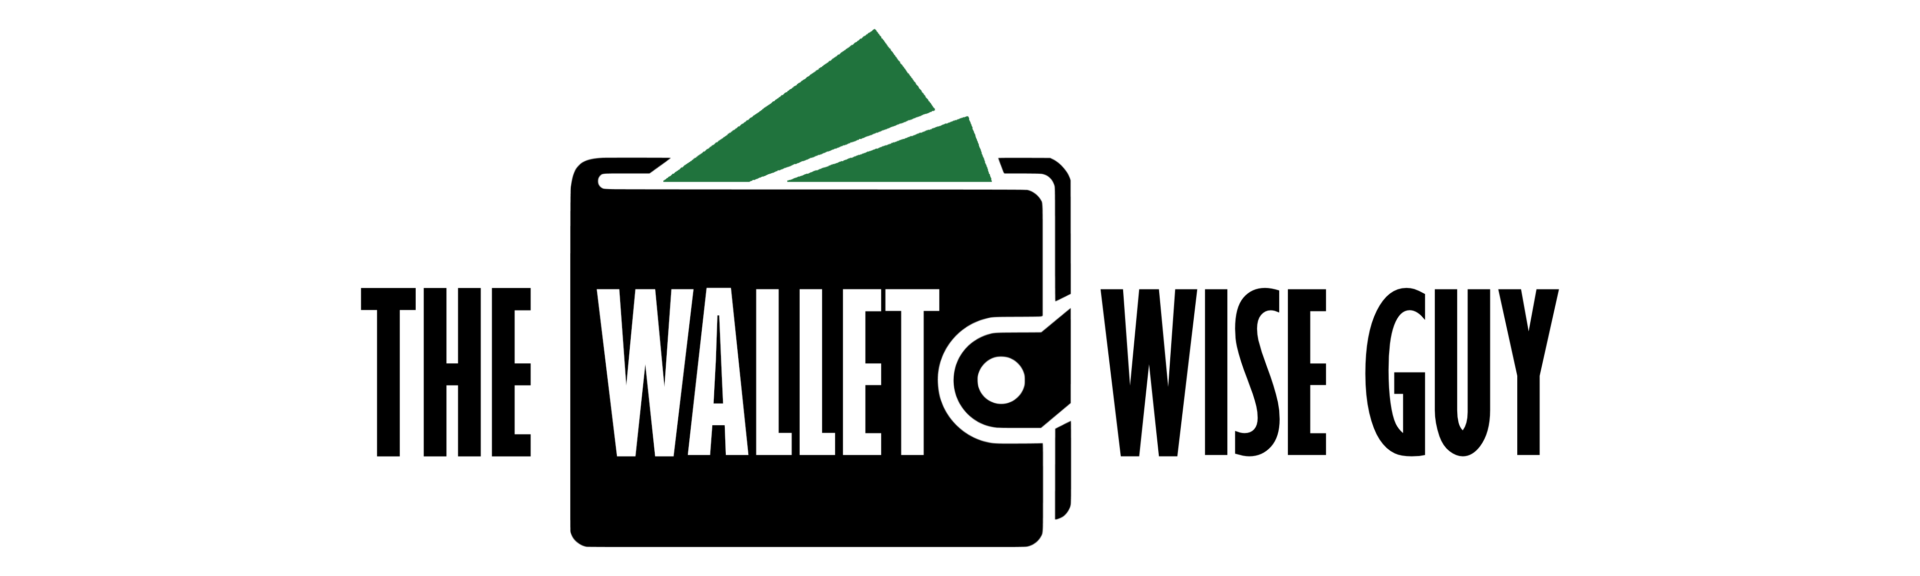 Wallet Wise Guy logo